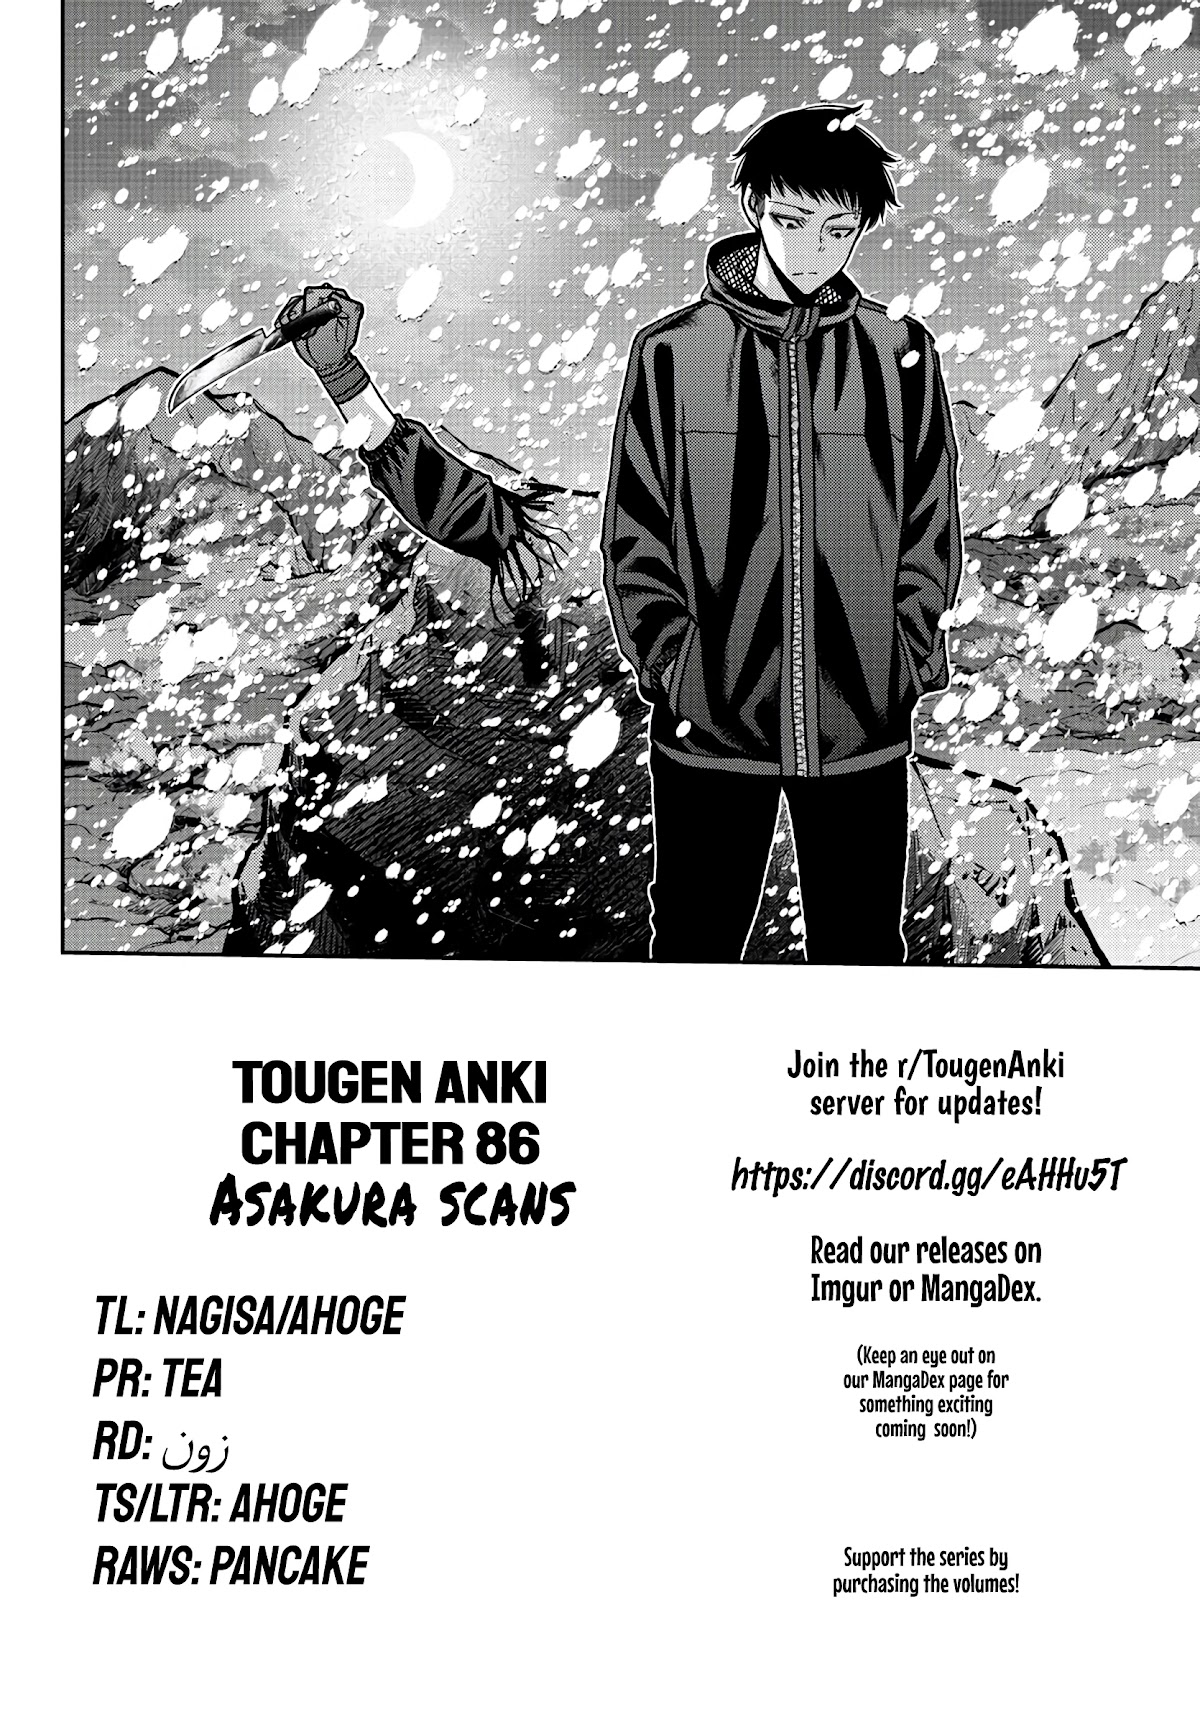 Tougen Anki, Tougen Anki manga, read Tougen Anki, Tougen Anki manga online, tougen anki anime, tougen anki mal, tougen anki review, tougen anki how many chapters, tougen anki anime adaptation, tougen anki manganelo, tougen anki wiki, shiki ichinose tougen anki, tougen anki volume 1, tougen anki characters, tougen anki raw, tougen anki shiki, tougen anki manga buy, tougen anki ch 1, tougen anki baka, tougen anki reddit, tougen anki author, tougen anki anime release date, tougen anki anime planet, tougen anki all characters, tougen anki amazon, tougen anki arcs, tougen anki barnes and noble, tougen anki bahasa indonesia, tougen anki buy, tougen anki pt br, baca tougen anki, tougen anki chapters, tougen anki chapter 48, tougen anki chapter 46, tougen anki ch 39, tougen anki chapter 6, tougen anki creator, tougen anki ch 45, tougen anki ch 46, tougen anki discord, tougen anki personality database, tougen anki release date, tougen anki english name, tougen anki english, tougen anki español, tougen anki scan eng, tougen anki female characters, tougen anki fandom, tougen anki free, tougen anki free read, tougen anki fanfiction, tougen anki fanfic, is tougen anki finished, tougen anki genre, tougen anki girl characters, is tougen anki good, will tougen anki get an anime, tougen anki homare, tougen anki love heaven, tougen anki icons, tougen anki ikari, tougen anki indo, tougen anki indonesia, tougen anki scan ita